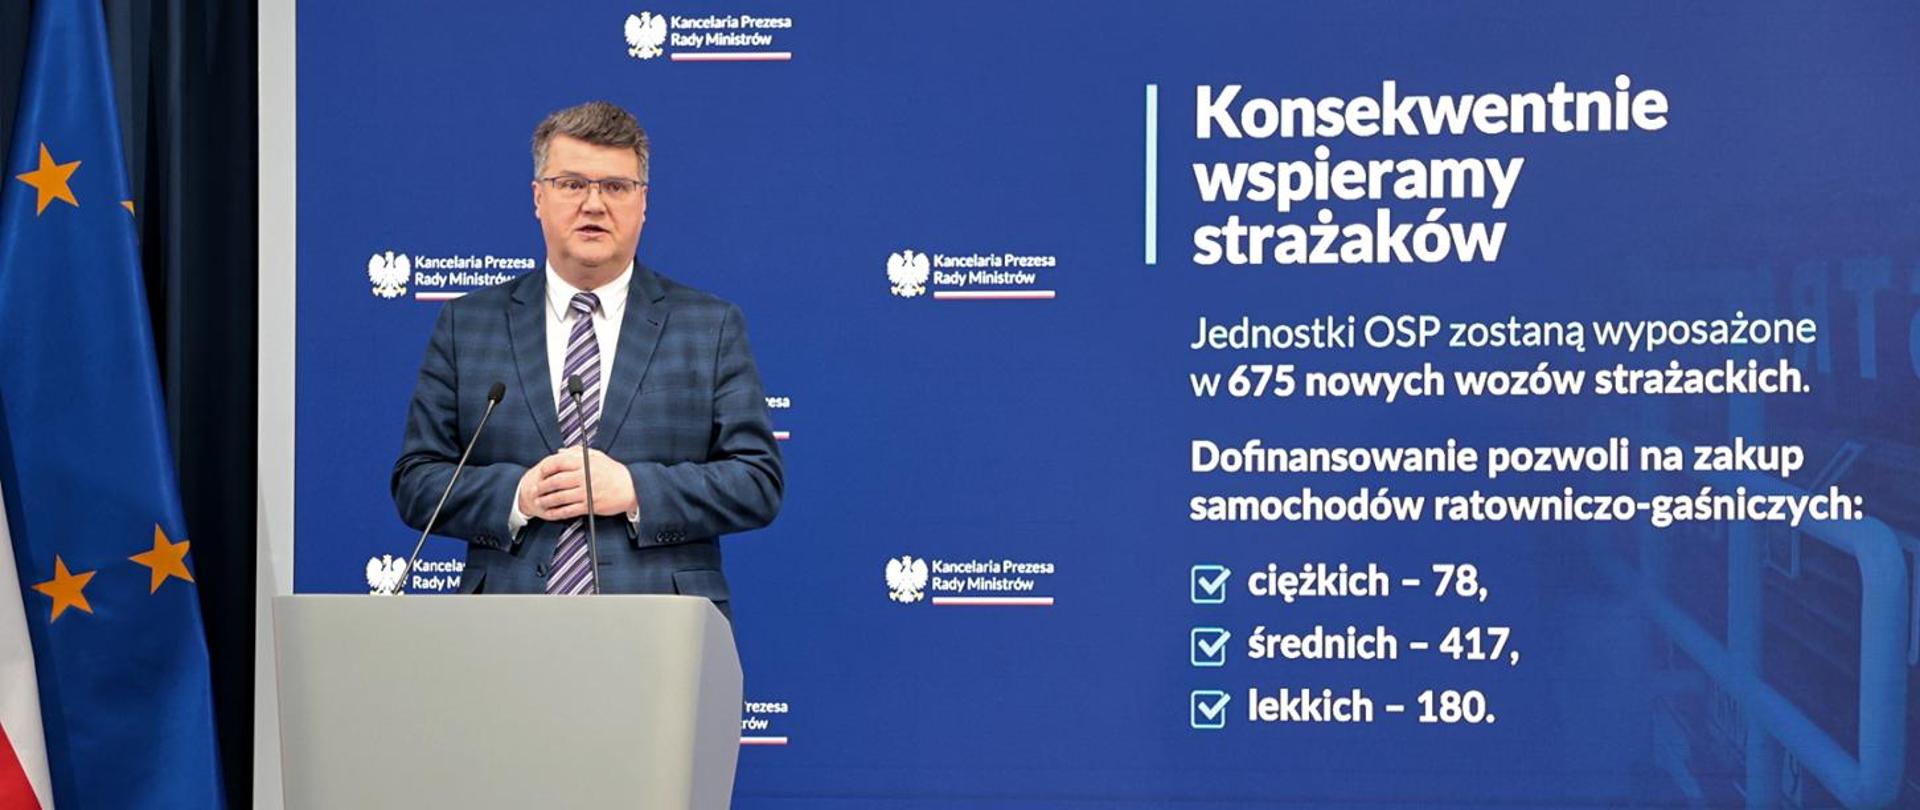 Wiceminister Maciej Wąsik w trakcie wystąpienia.